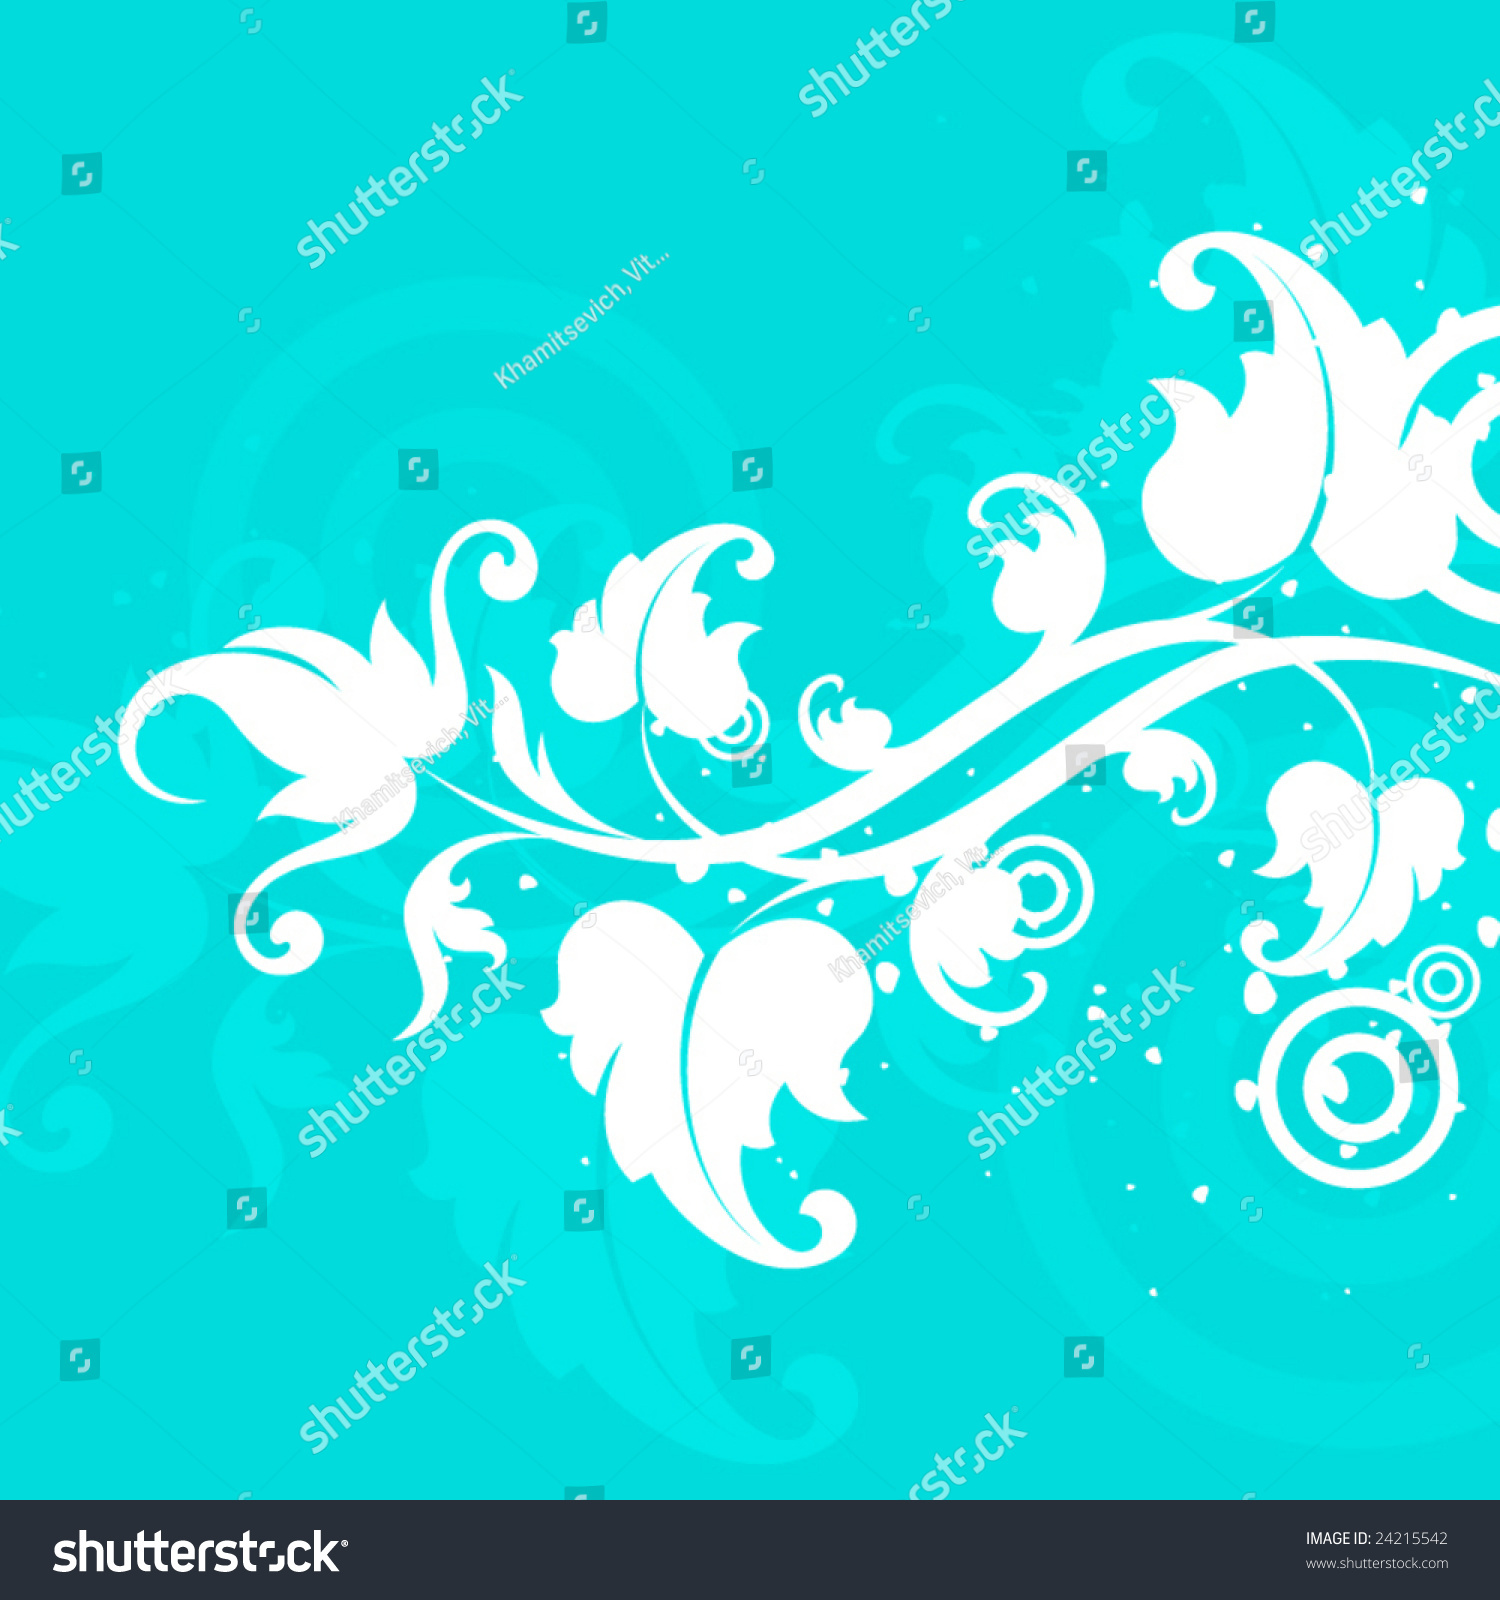 White Flower On Turquoise Background Stock Vector 24215542 - Shutterstock